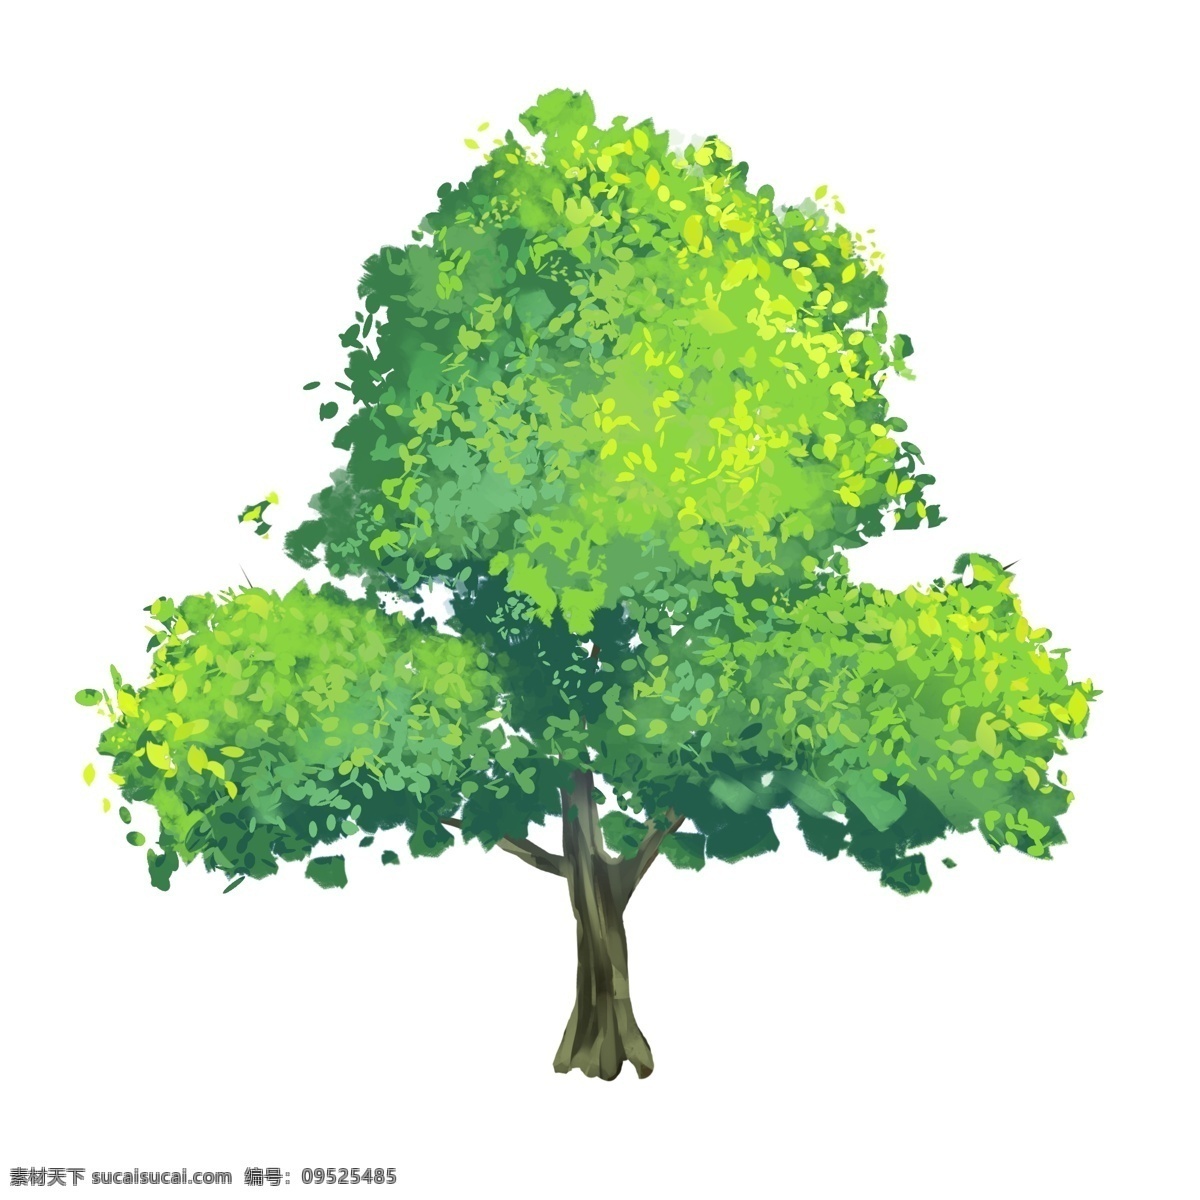 大树 插画 绿色 夏季 清新 海报 png格式